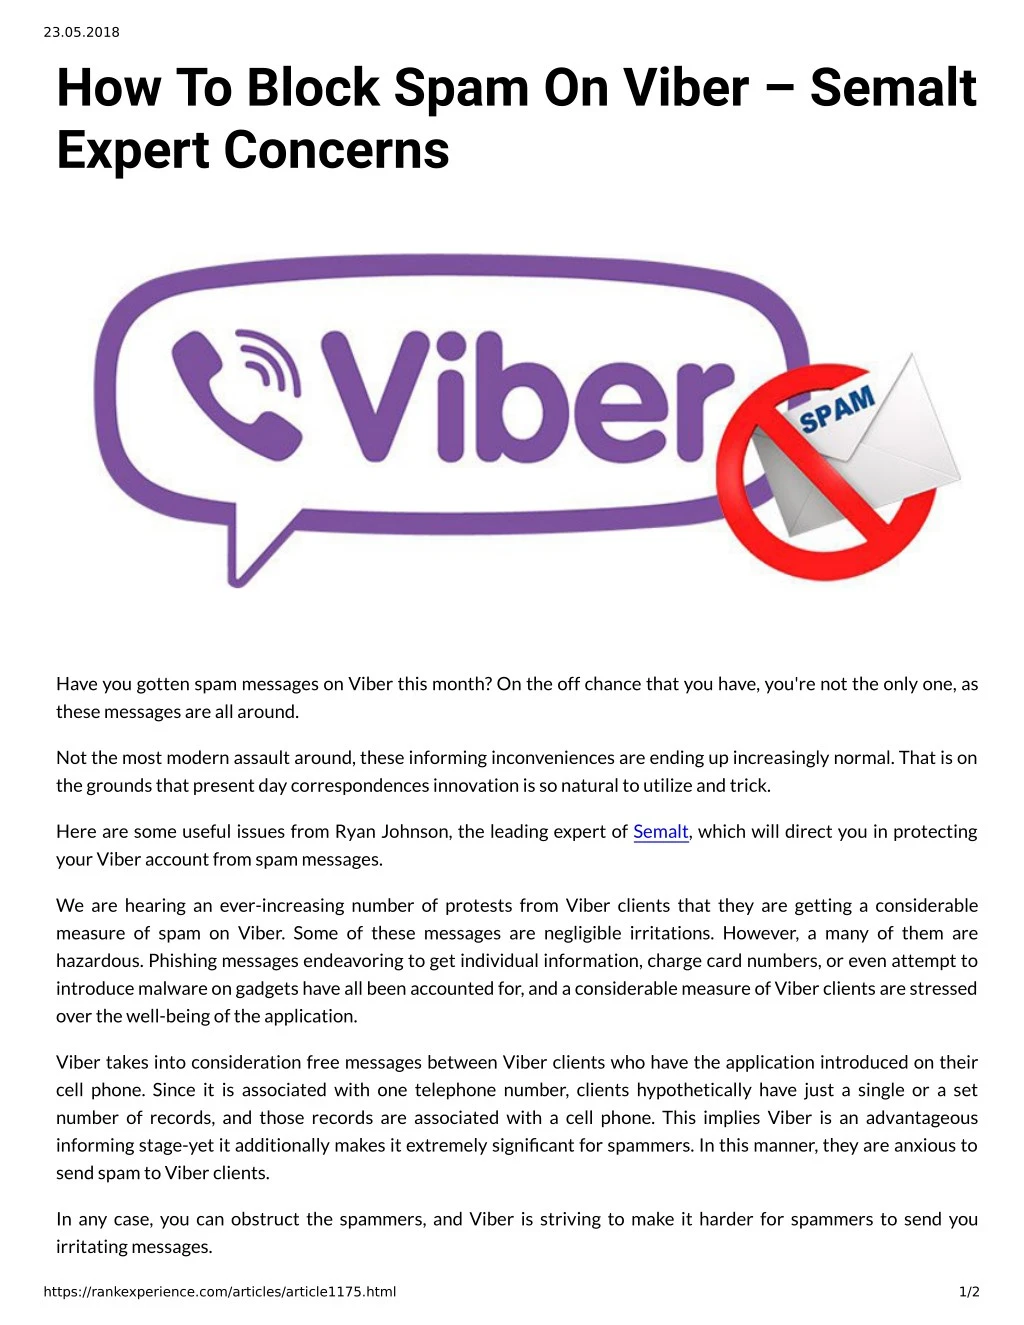 23 05 2018 how to block spam on viber semalt